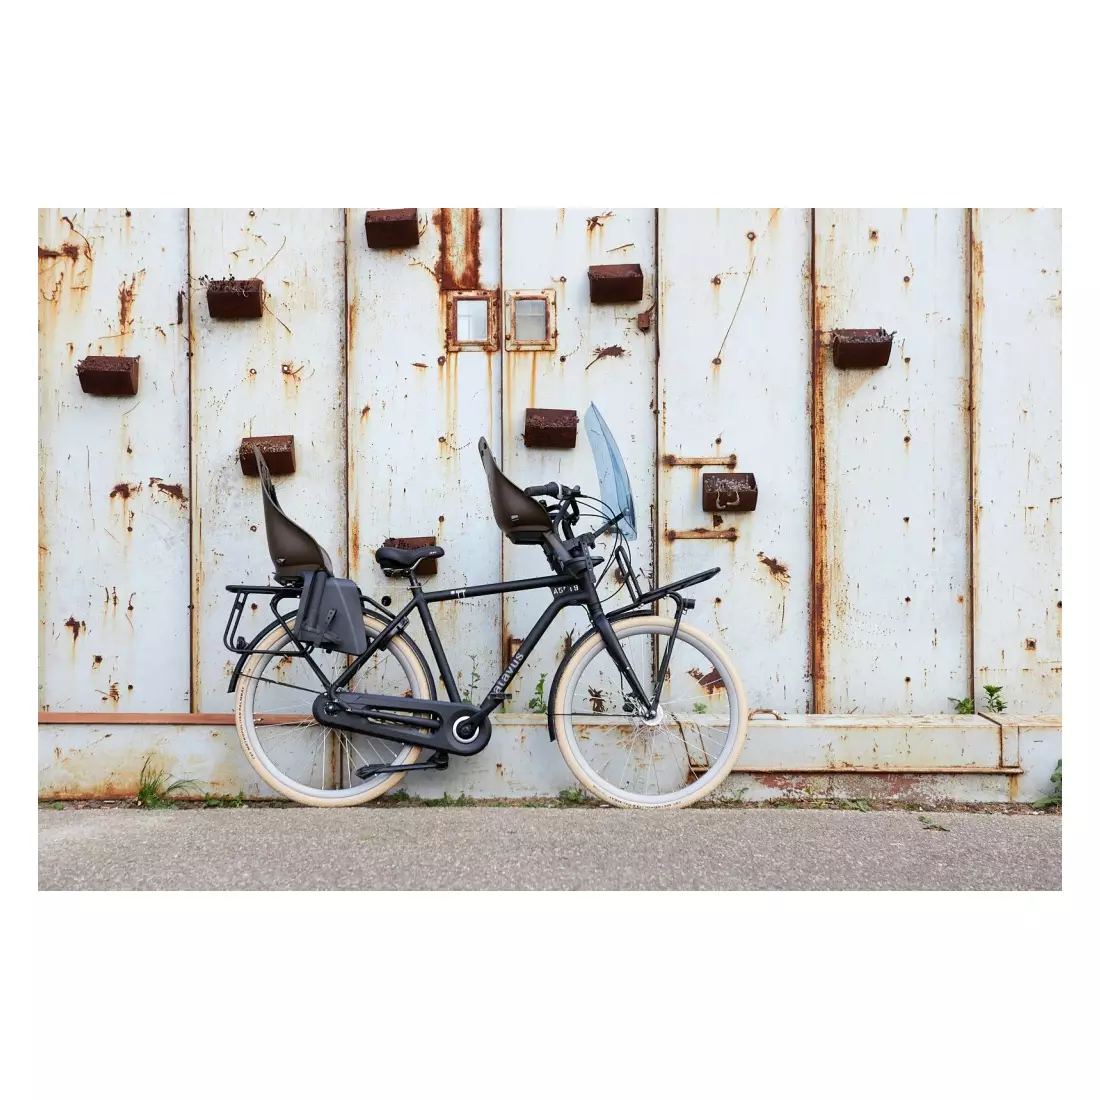 URBAN IKI Bicycle seat - front, pink/black U-212726